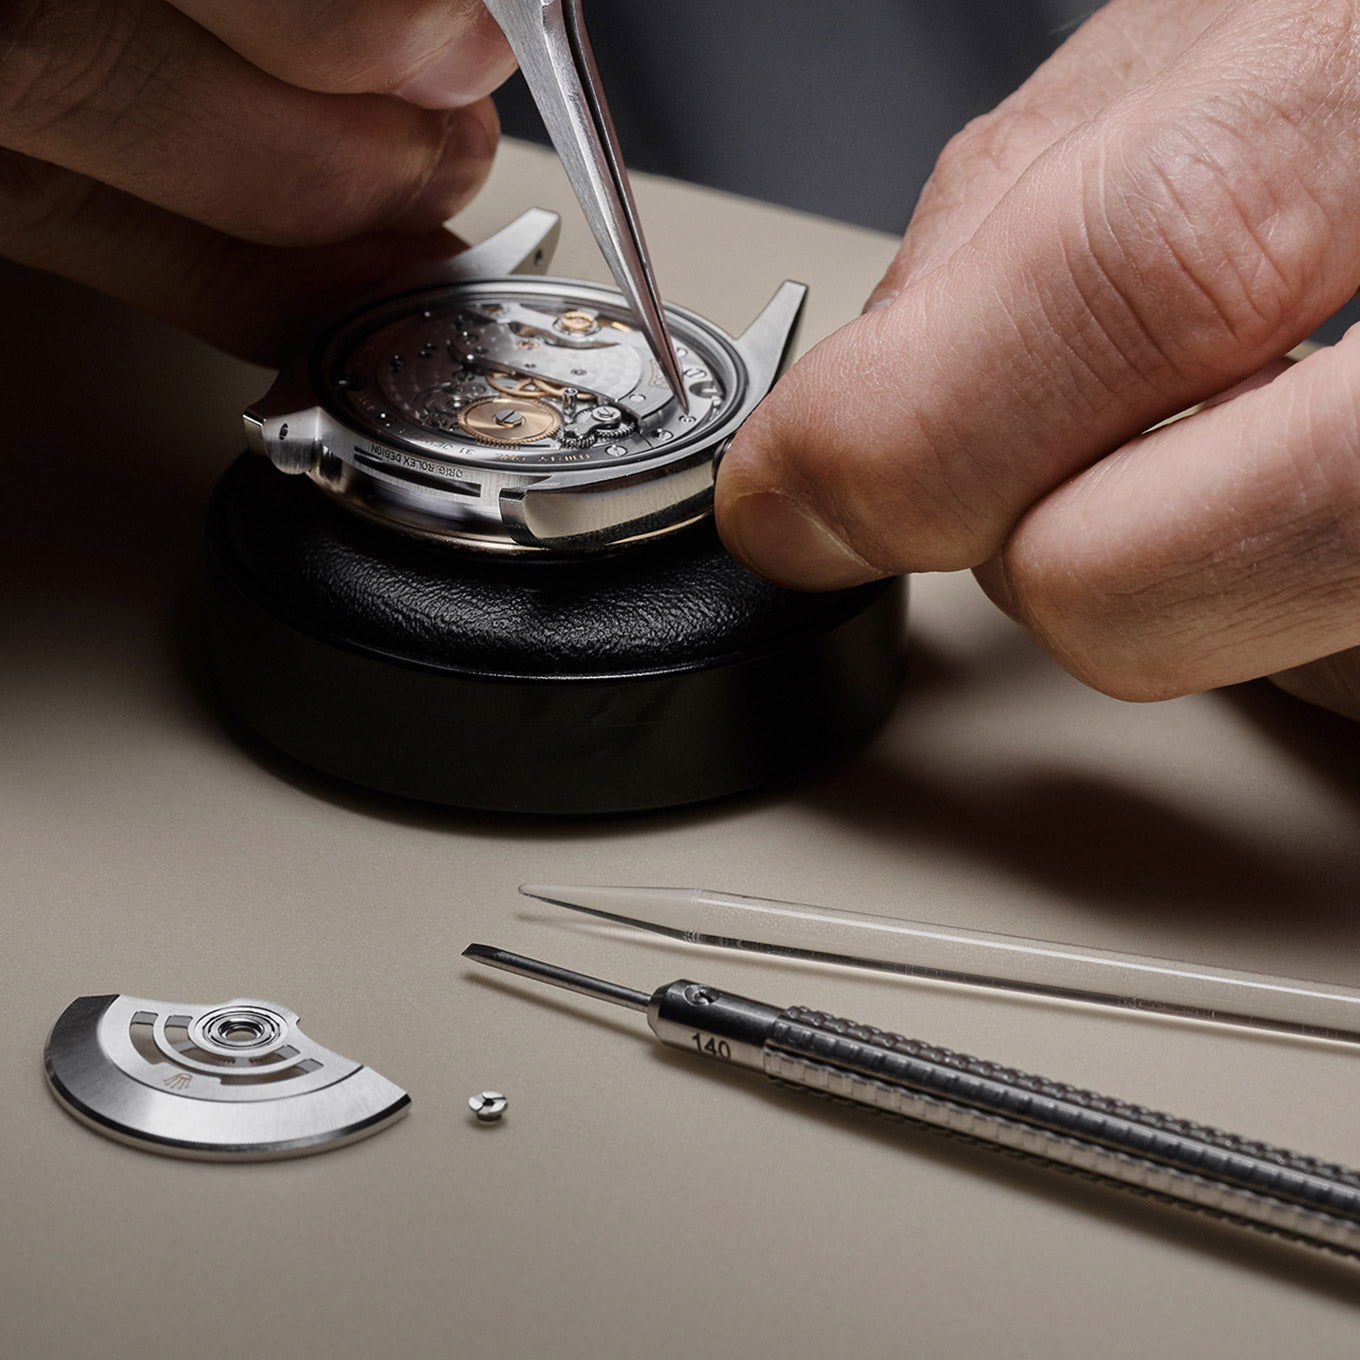 Rolex at Deacons watch maker dismantling watch 